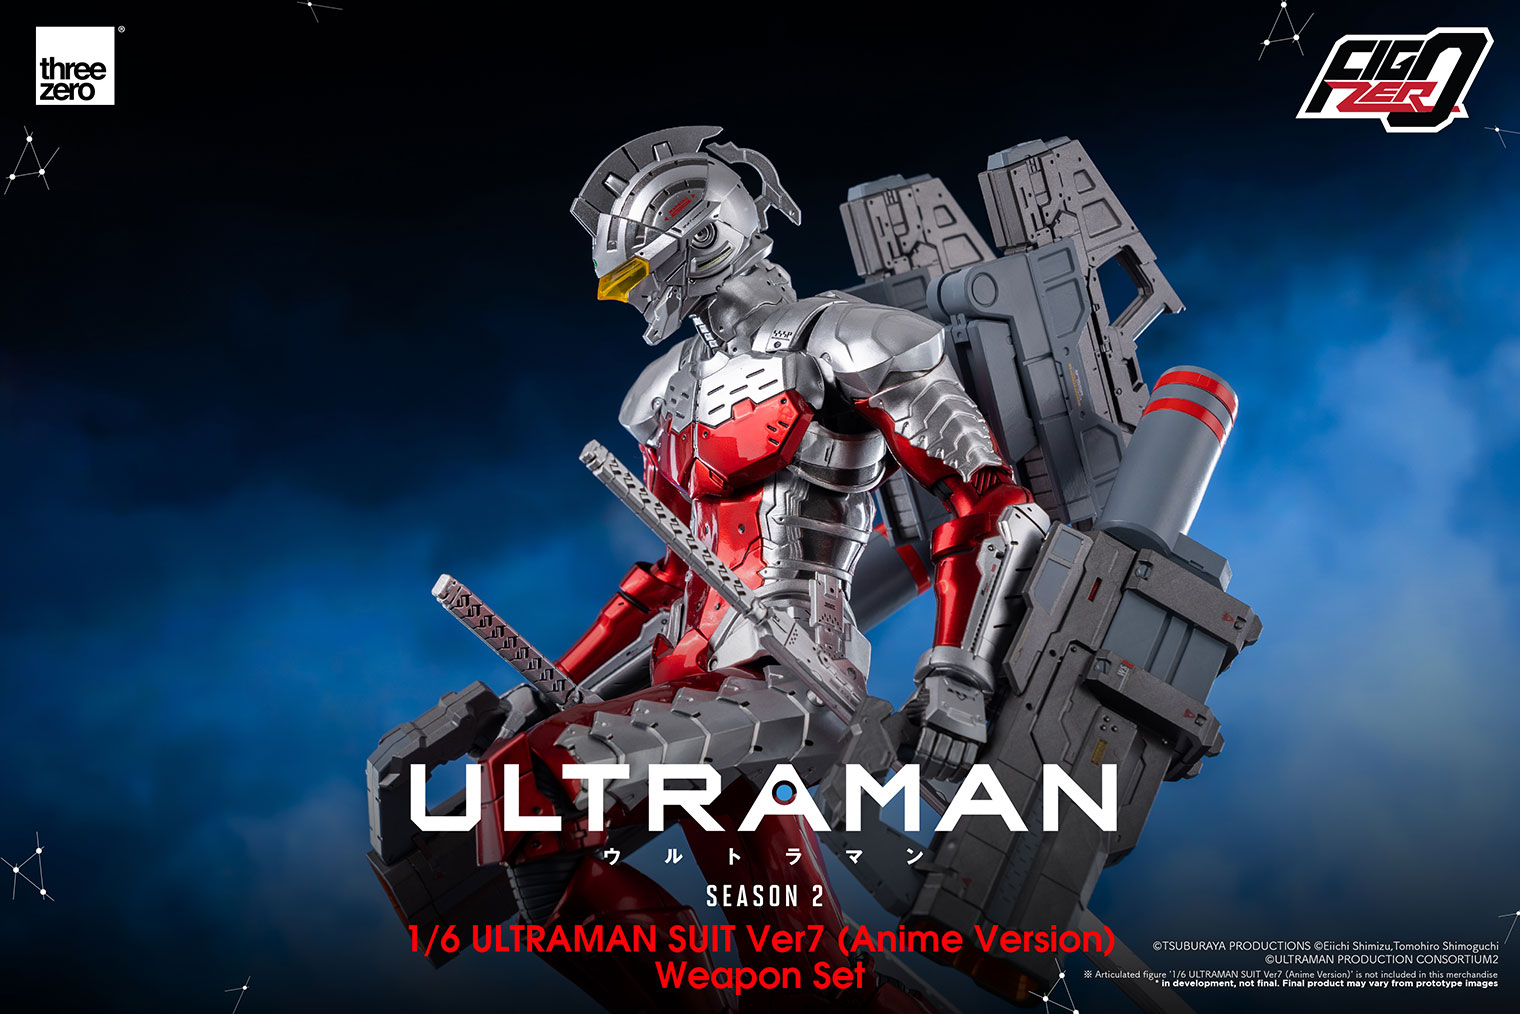 アニメ『ULTRAMAN』シーズン2フィグゼロ 1/6 ULTRAMAN SUIT Ver7 (Anime Version) 武器セット –  threezero store